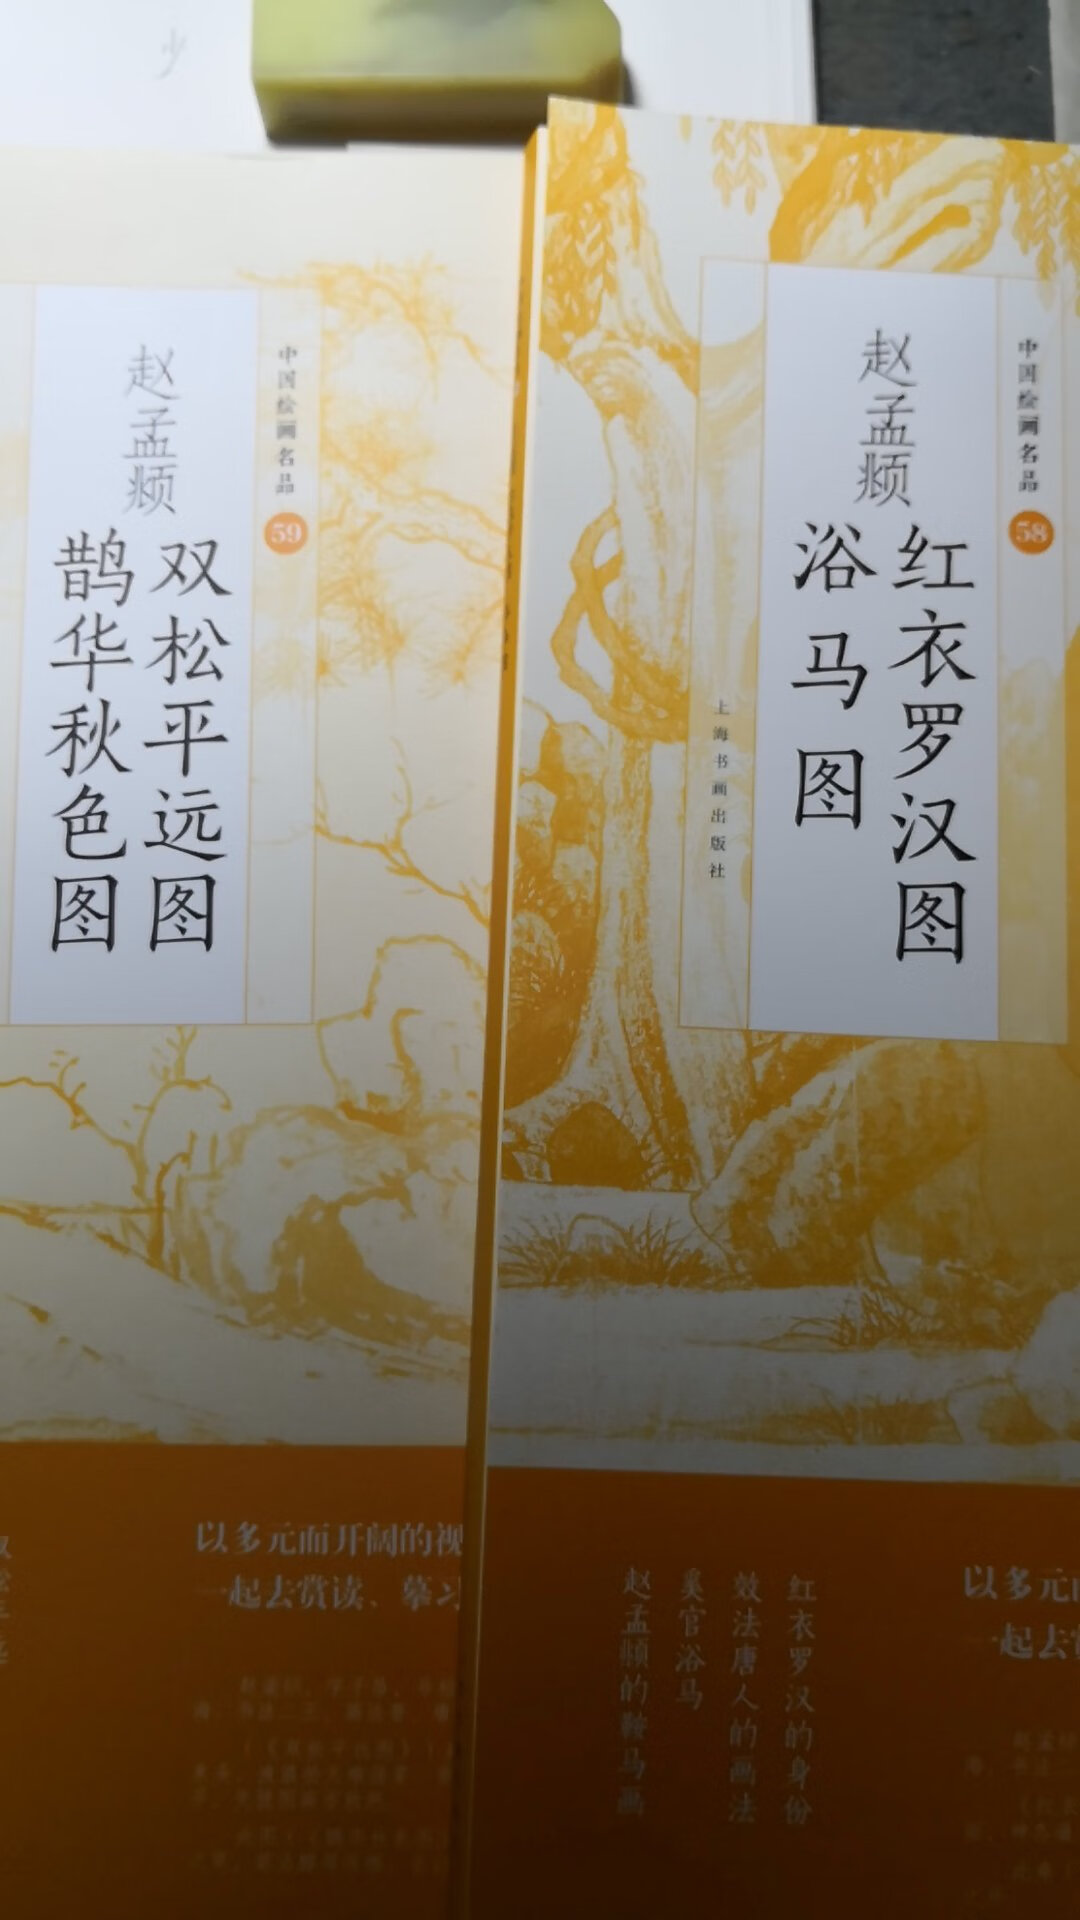 上海书画这套书选的底本经典，印刷也比较认真